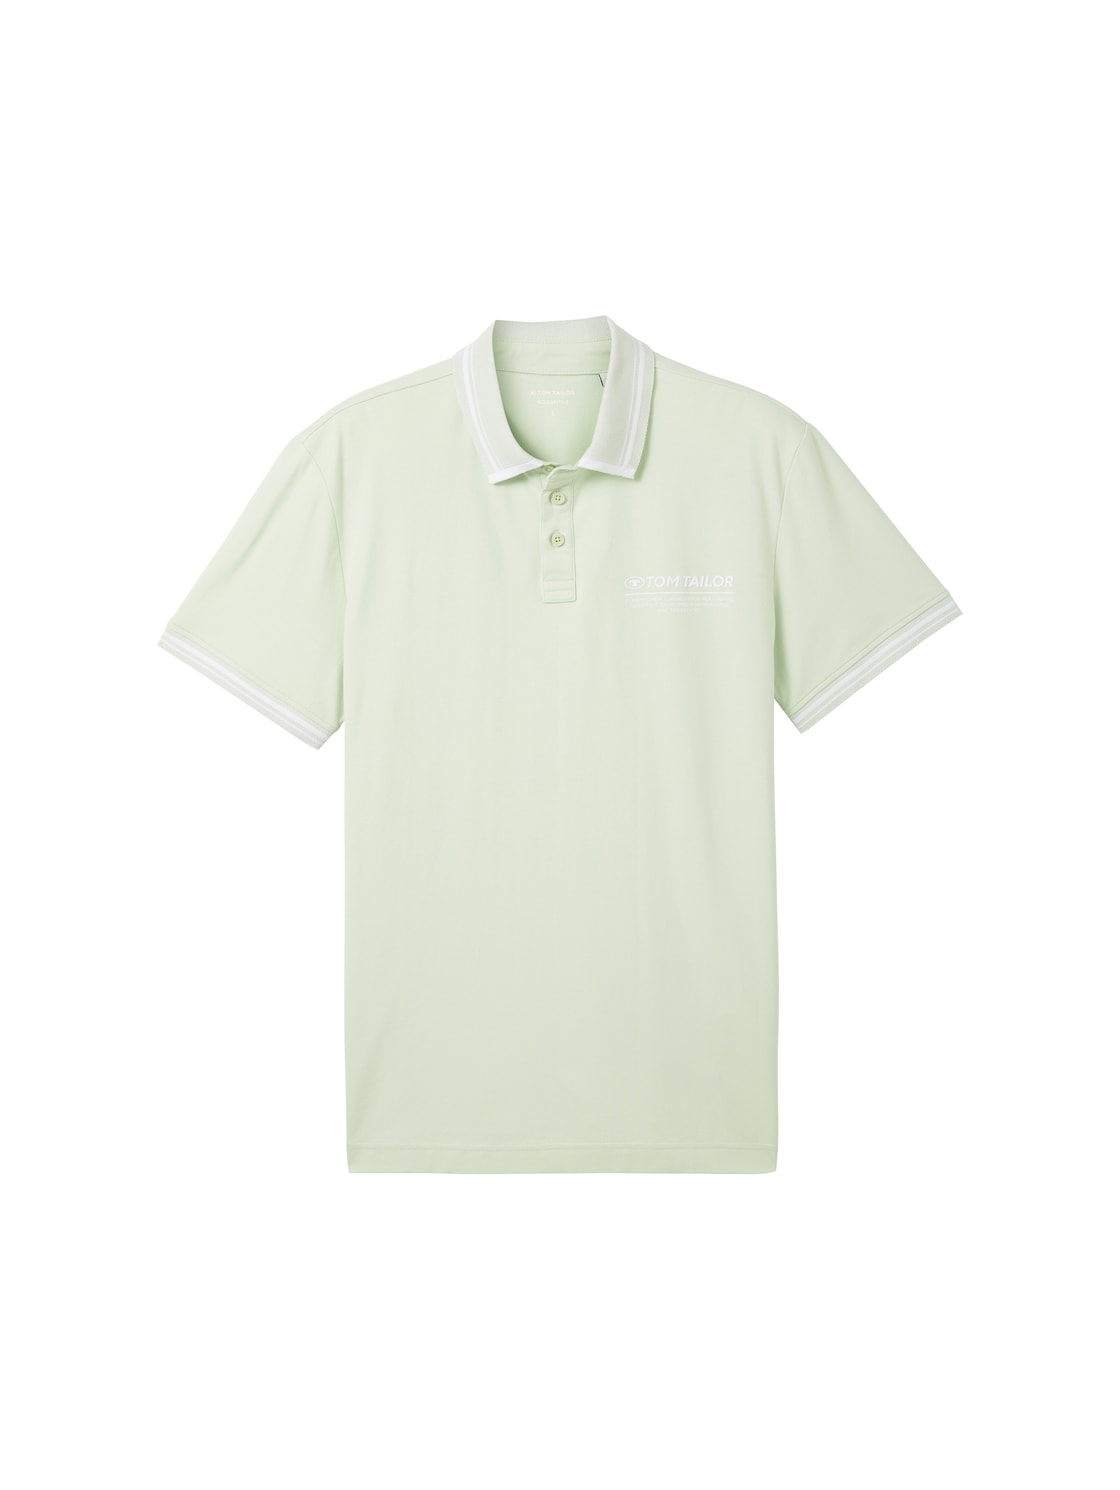 TOM TAILOR Herren Poloshirt mit Logo Print, grün, Uni, Gr. XL von Tom Tailor